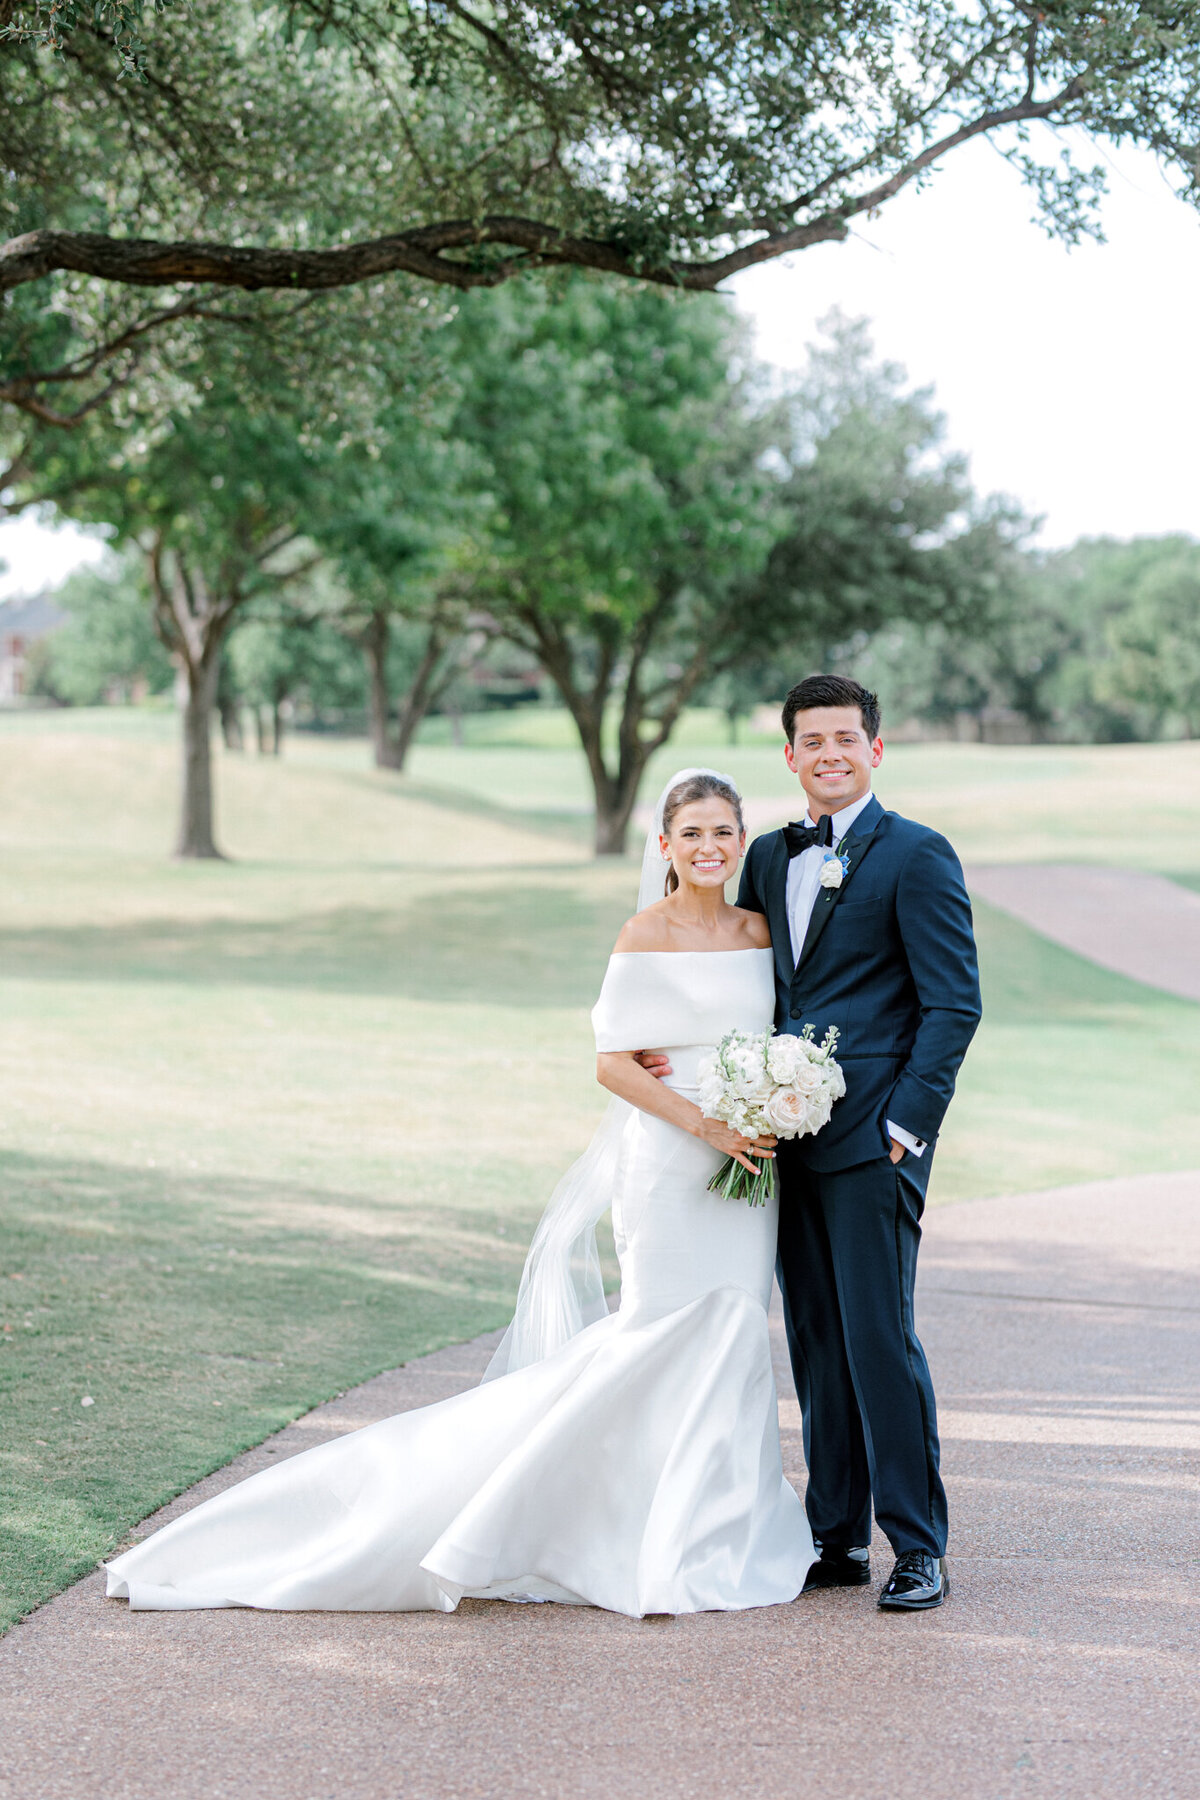 Annie & Logan's Wedding | Dallas Wedding Photographer | Sami Kathryn Photography-1